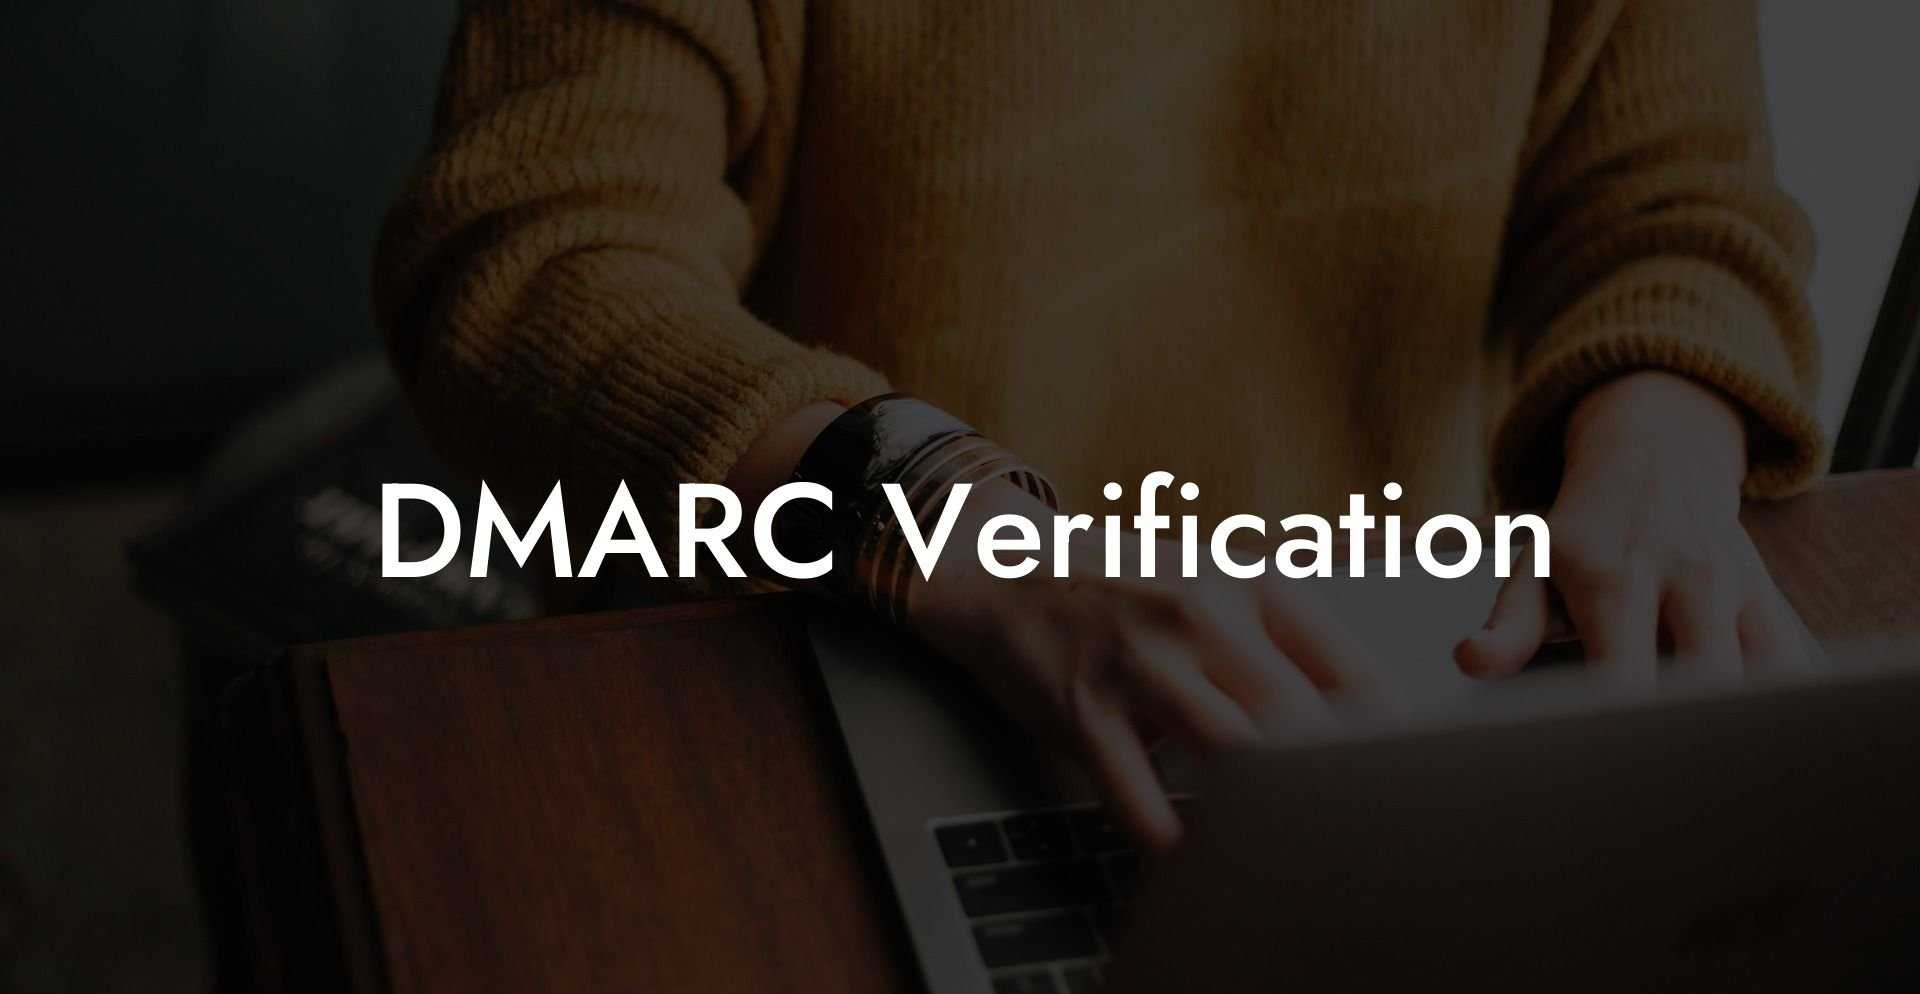 DMARC Verification